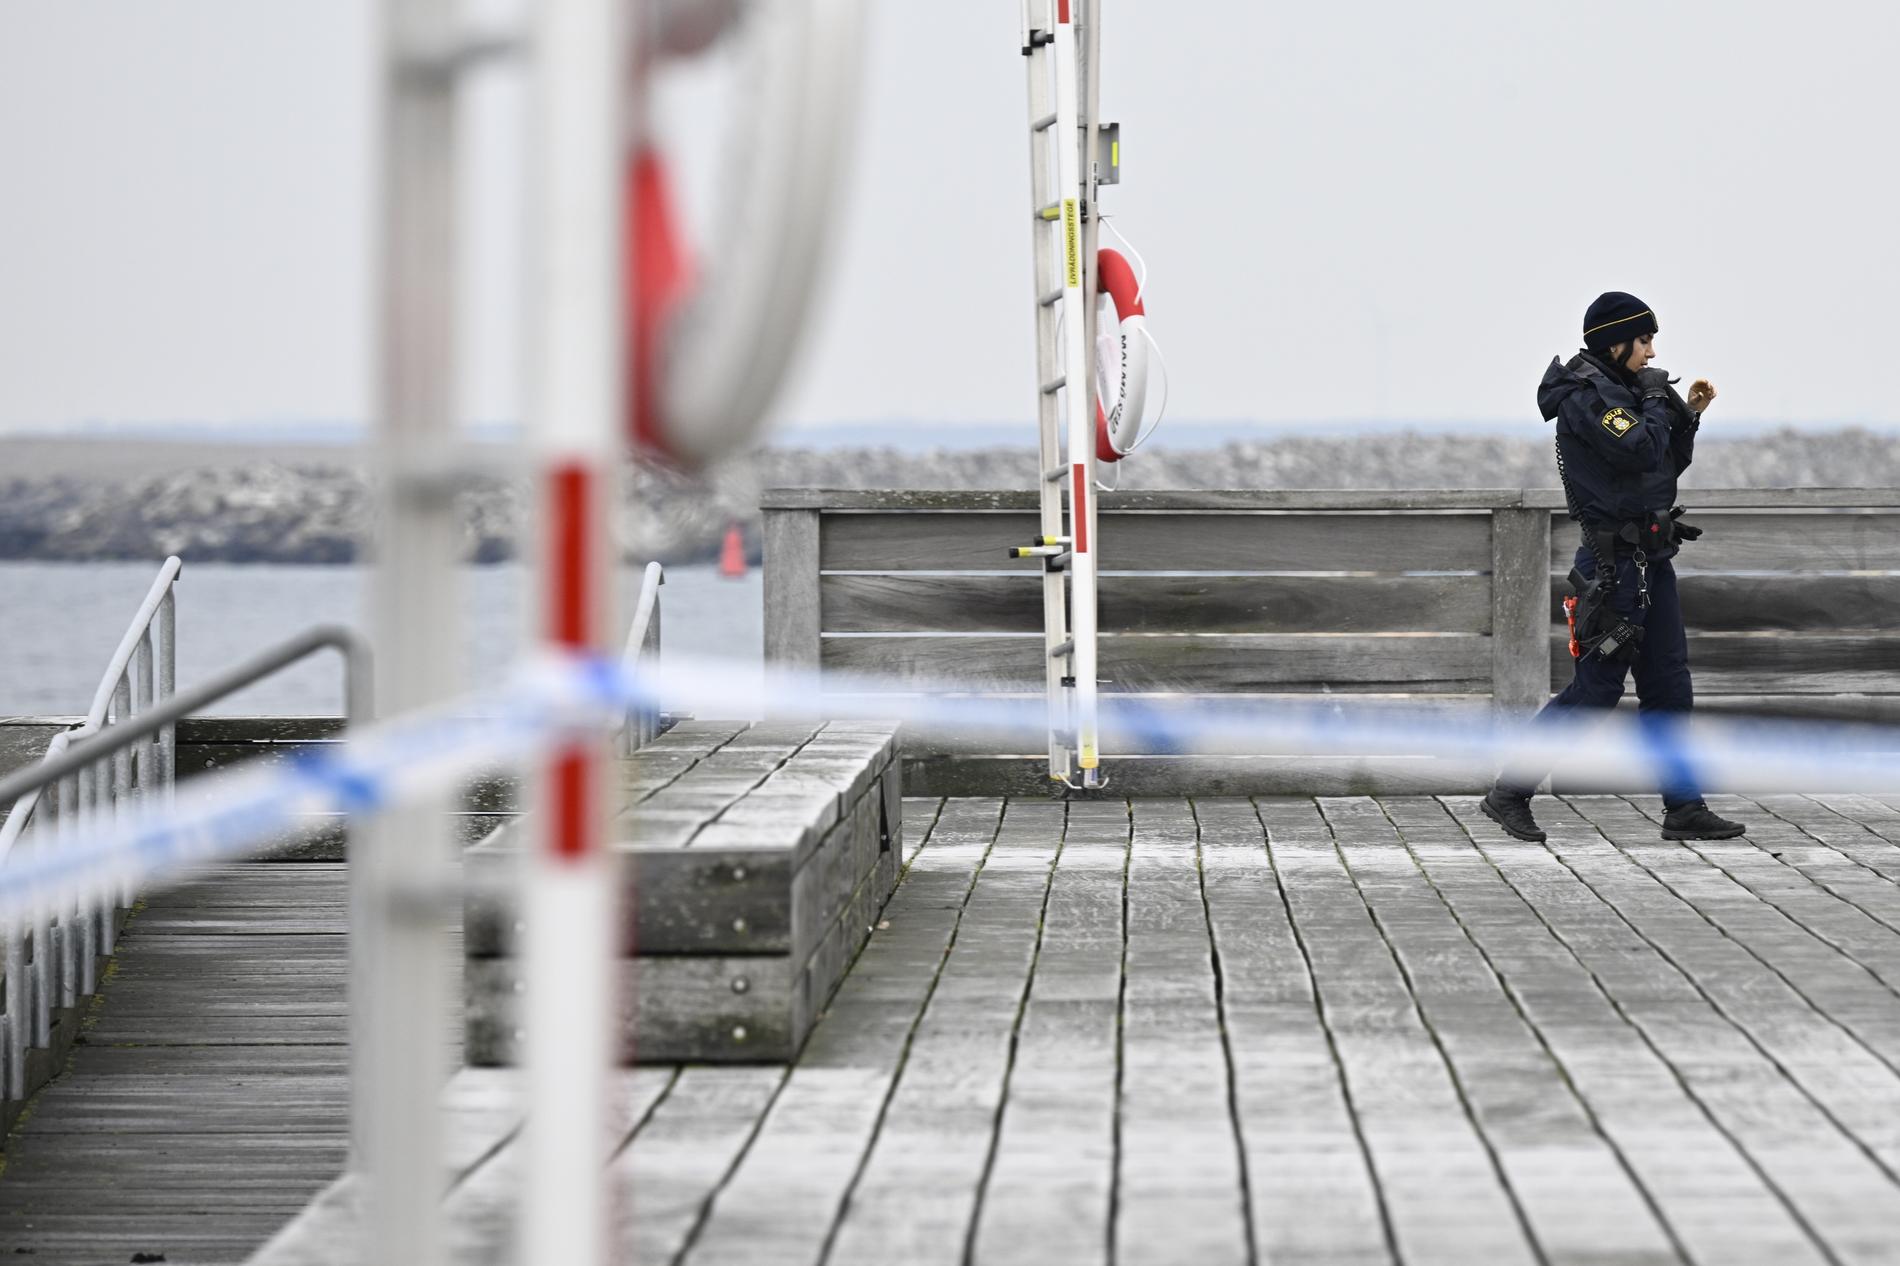 Polis och sjöräddning på plats vid Scaniabadet i Malmö.